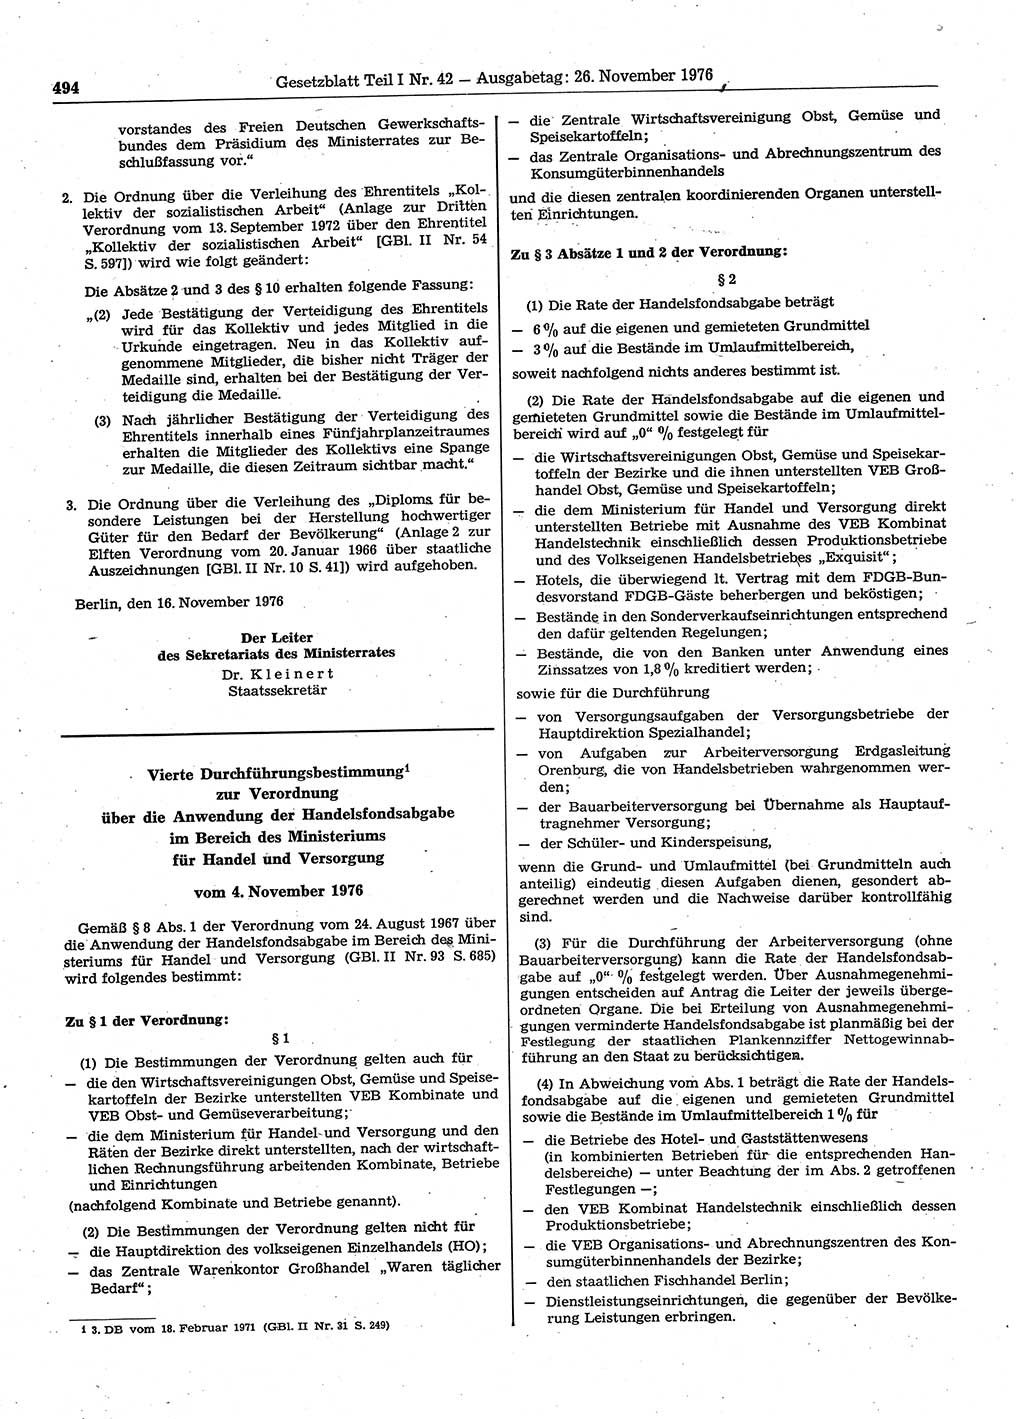 Gesetzblatt (GBl.) der Deutschen Demokratischen Republik (DDR) Teil Ⅰ 1976, Seite 494 (GBl. DDR Ⅰ 1976, S. 494)